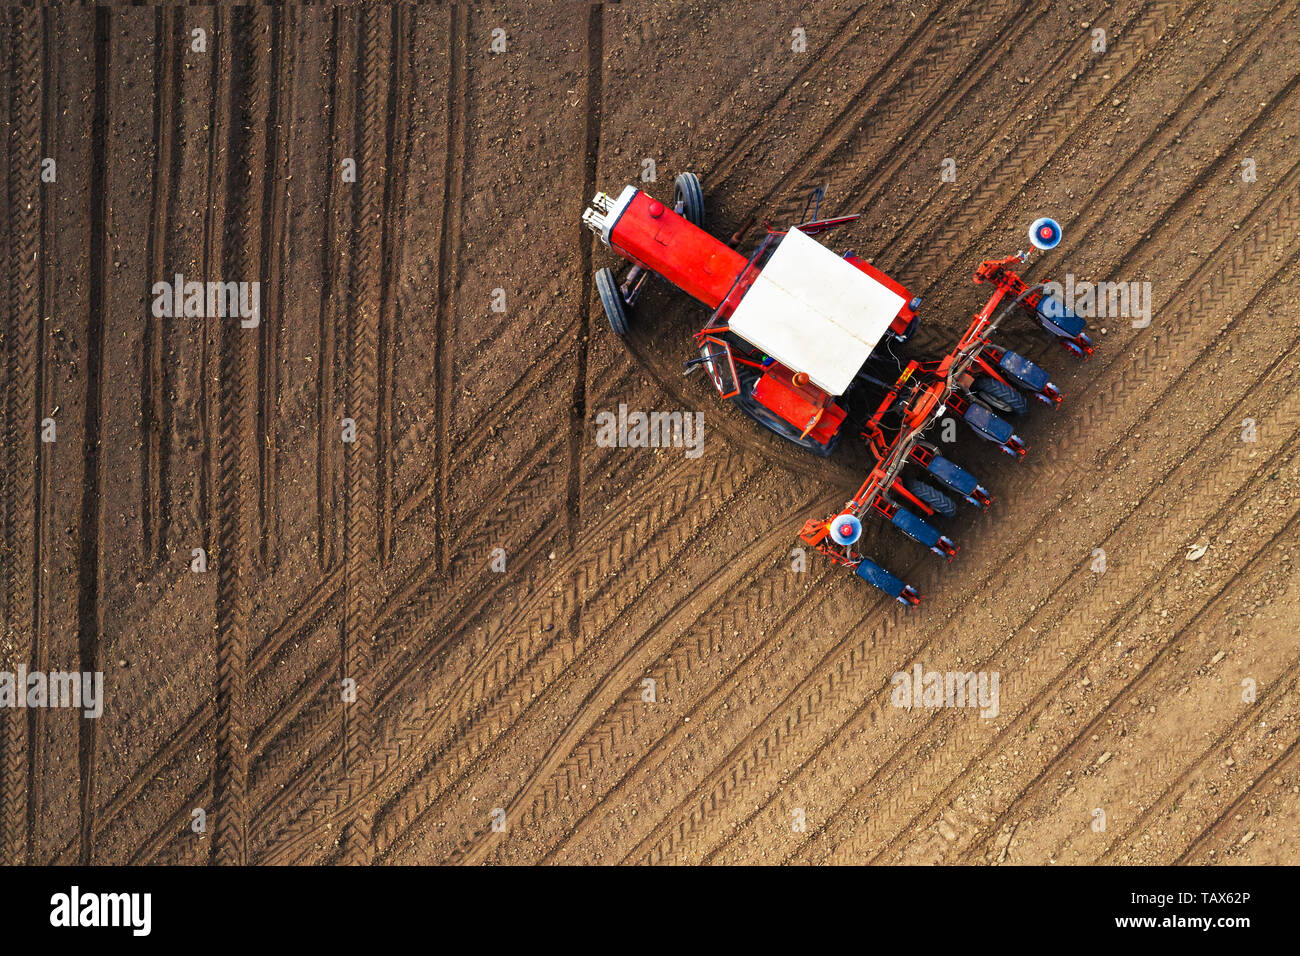 Draufsicht des Traktors das Einpflanzen von Maissaatgut in Feld, hohe Betrachtungswinkel drone Fotografie Stockfoto